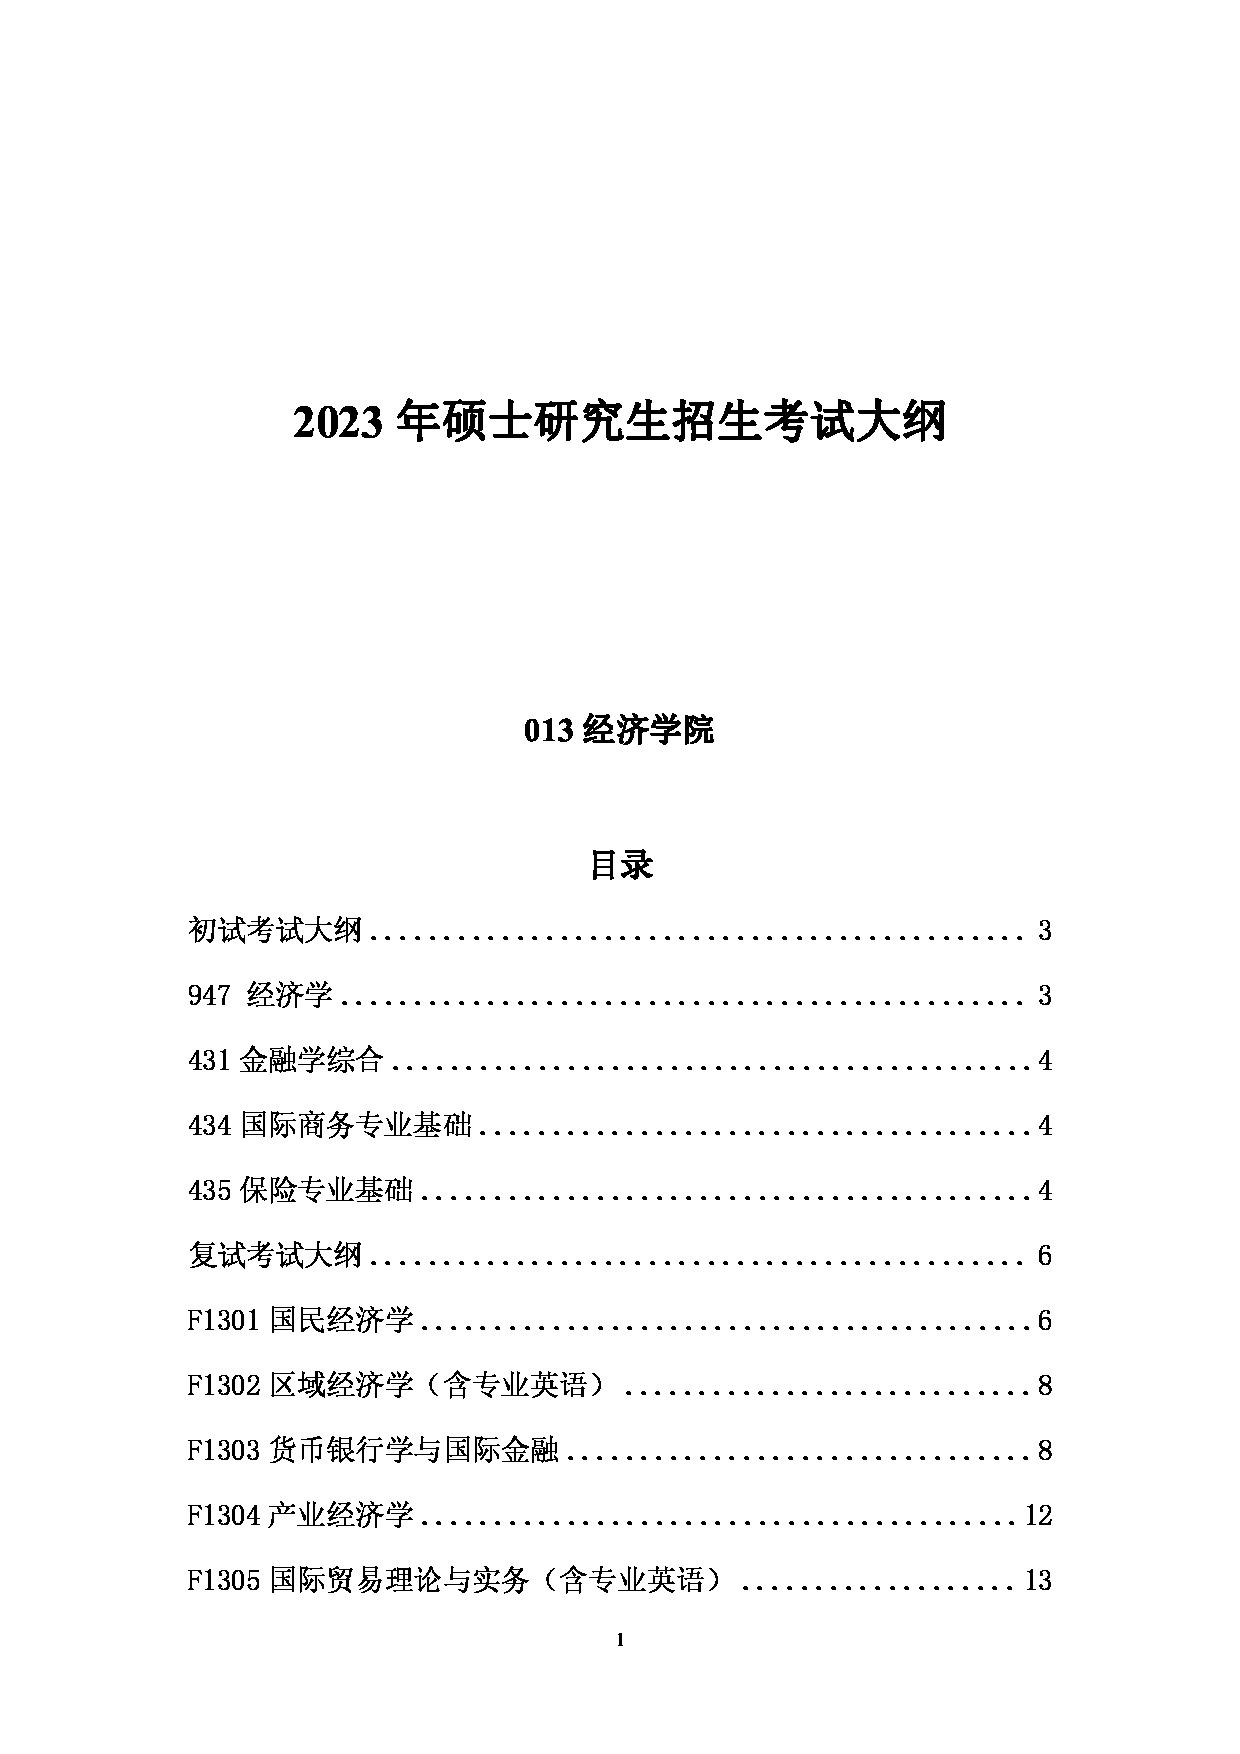 2023考研大纲：中国海洋大学2023年考研 013经济学院 考试大纲第1页